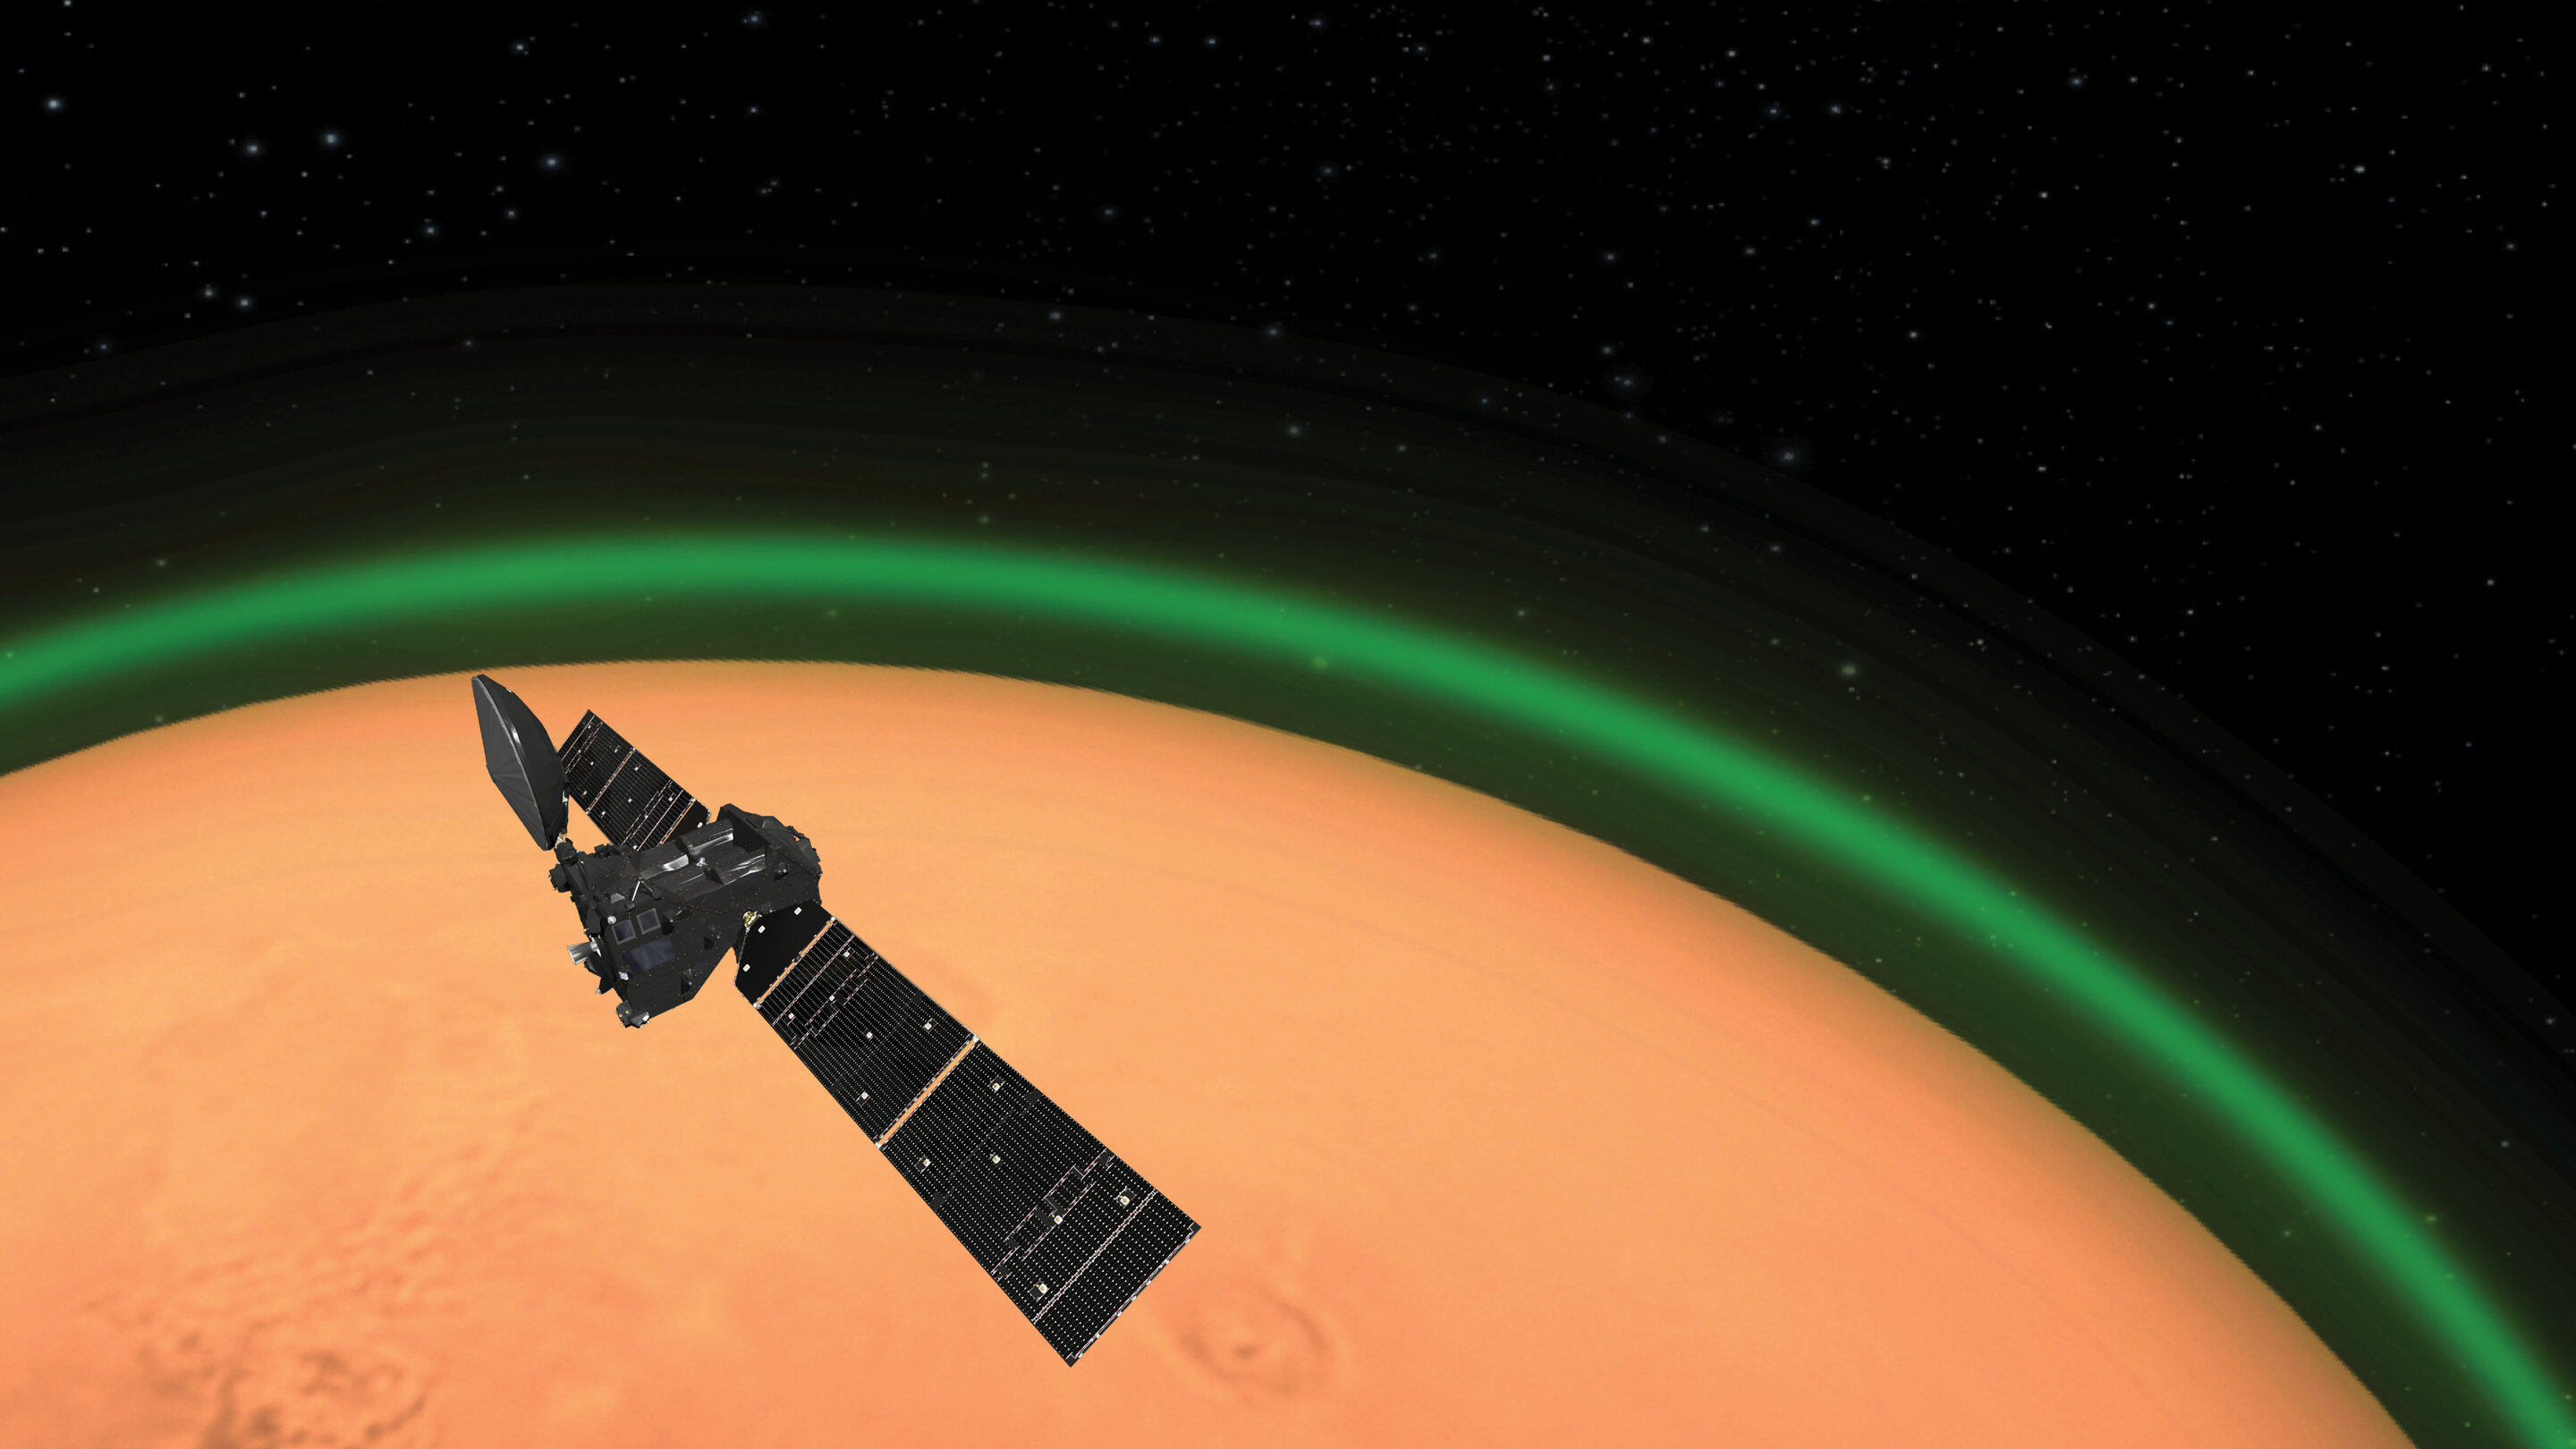 Impresión artística del ExoMars Trace Gas Orbiter de la ESA que detecta el brillo verde del oxígeno en la atmósfera marciana. Esta emisión, detectada en el lado de día de Marte, es similar al resplandor nocturno que se ve alrededor de la atmósfera terrestre desde el espacio. Crédito: Agencia Espacial Europea